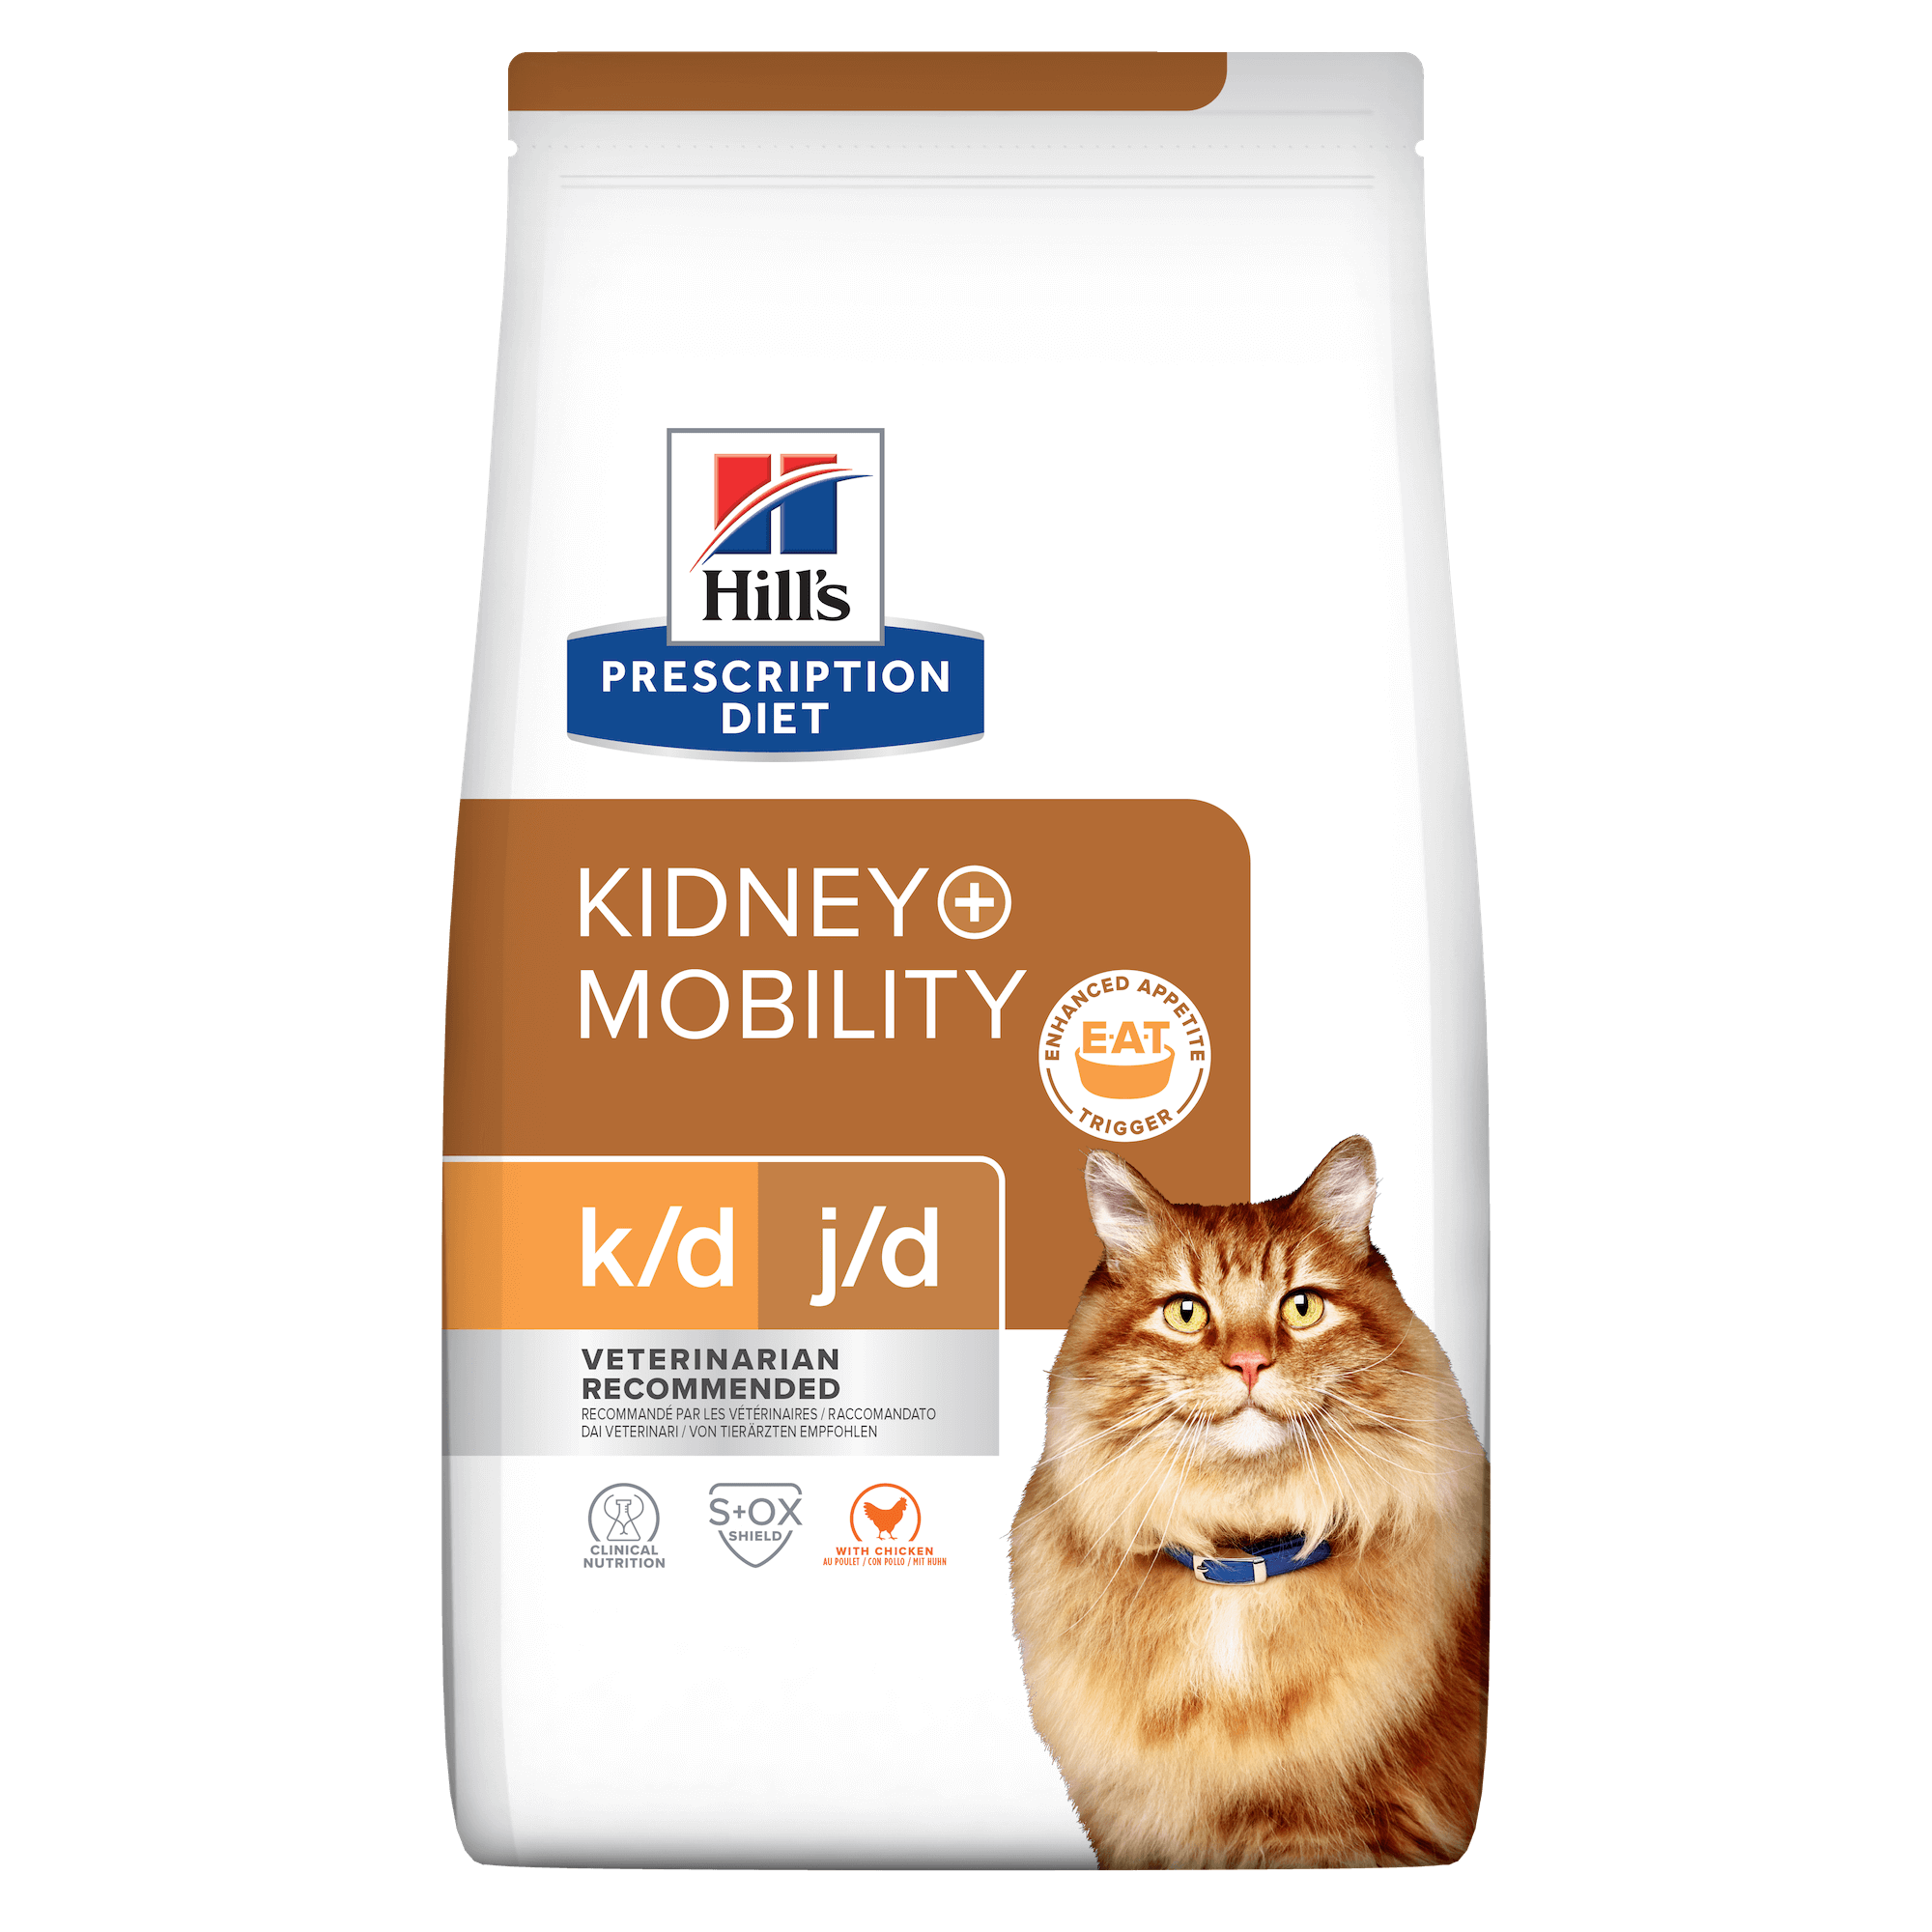 Hill's Prescription Diet k/d + Mobility Trockenfutter für Katzen mit Huhn zur Unterstützung der Nieren + Gelenke